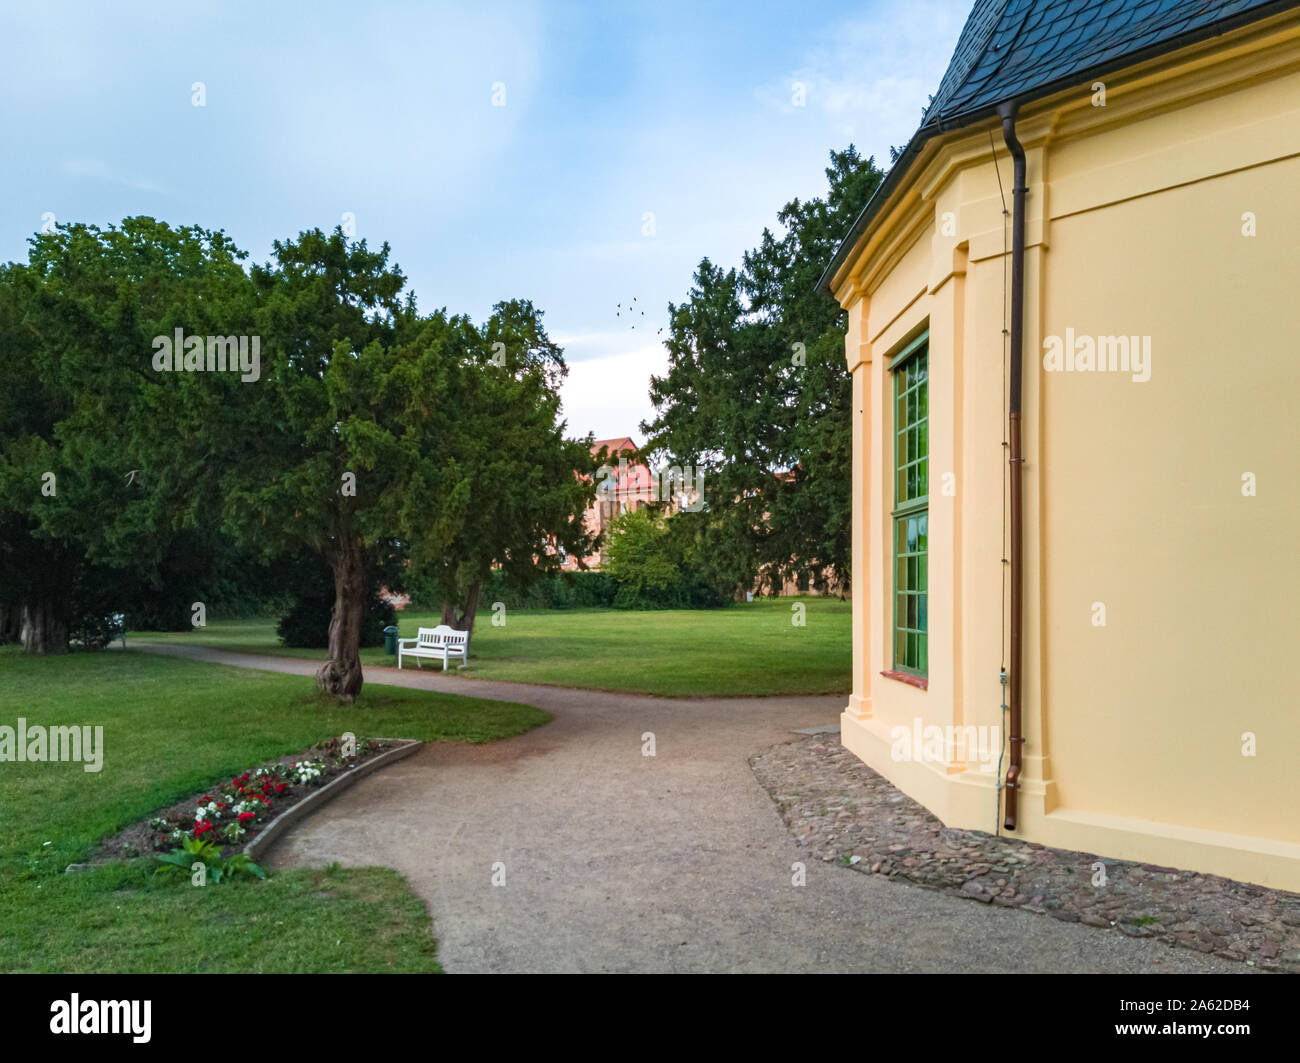 Dargun, Mecklenburg-Pomerania, Germania - 5 Agosto 2019: impressioni del Manor e Monastero Park di Dargun, Mecklenburg-Pomerania, Germania. Foto Stock